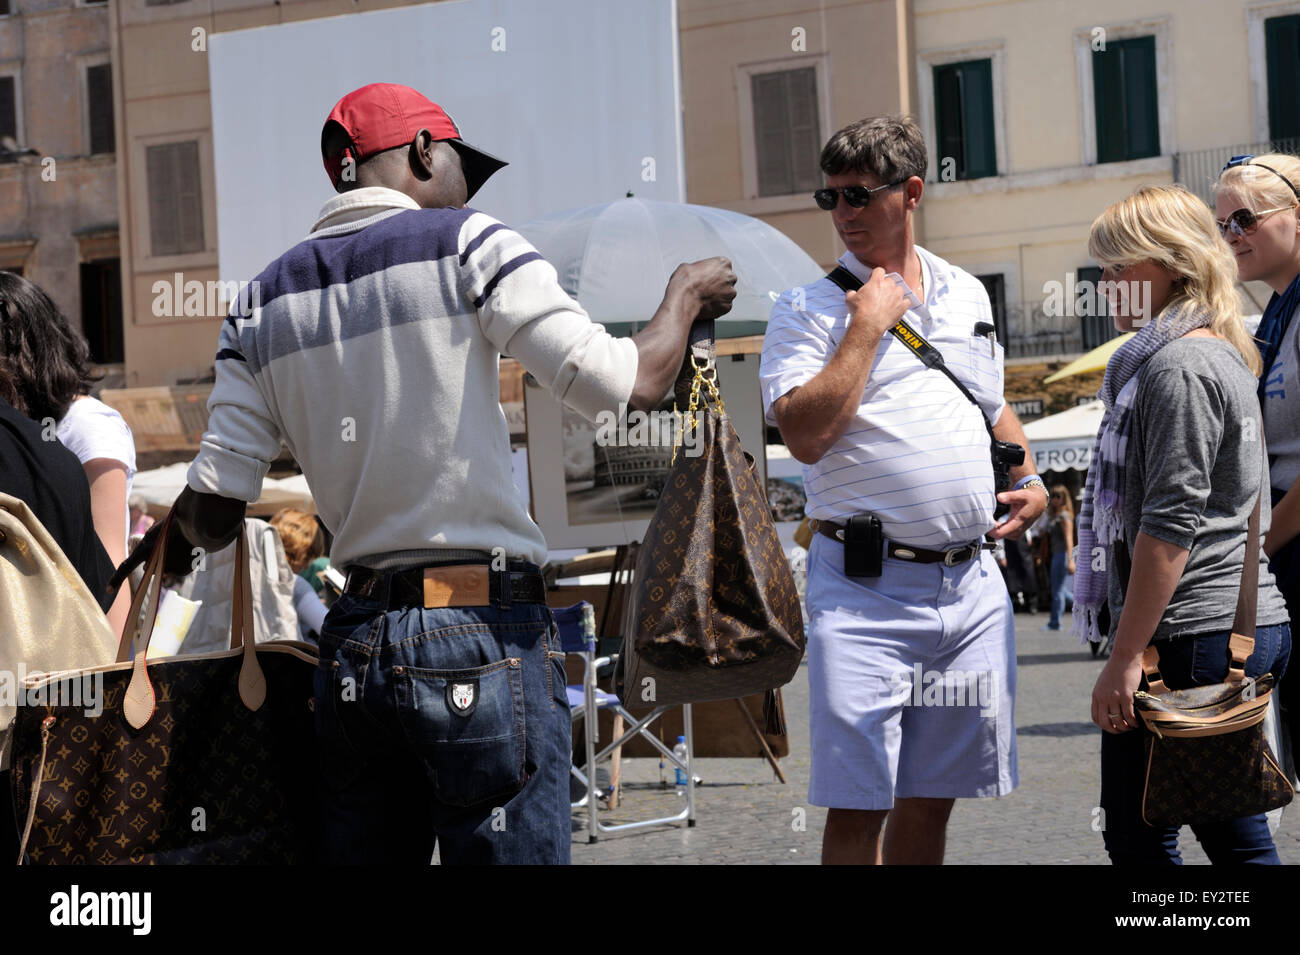 Italie, Rome, Piazza Navona, immigrants vendant des marchandises contrefaites aux touristes Banque D'Images